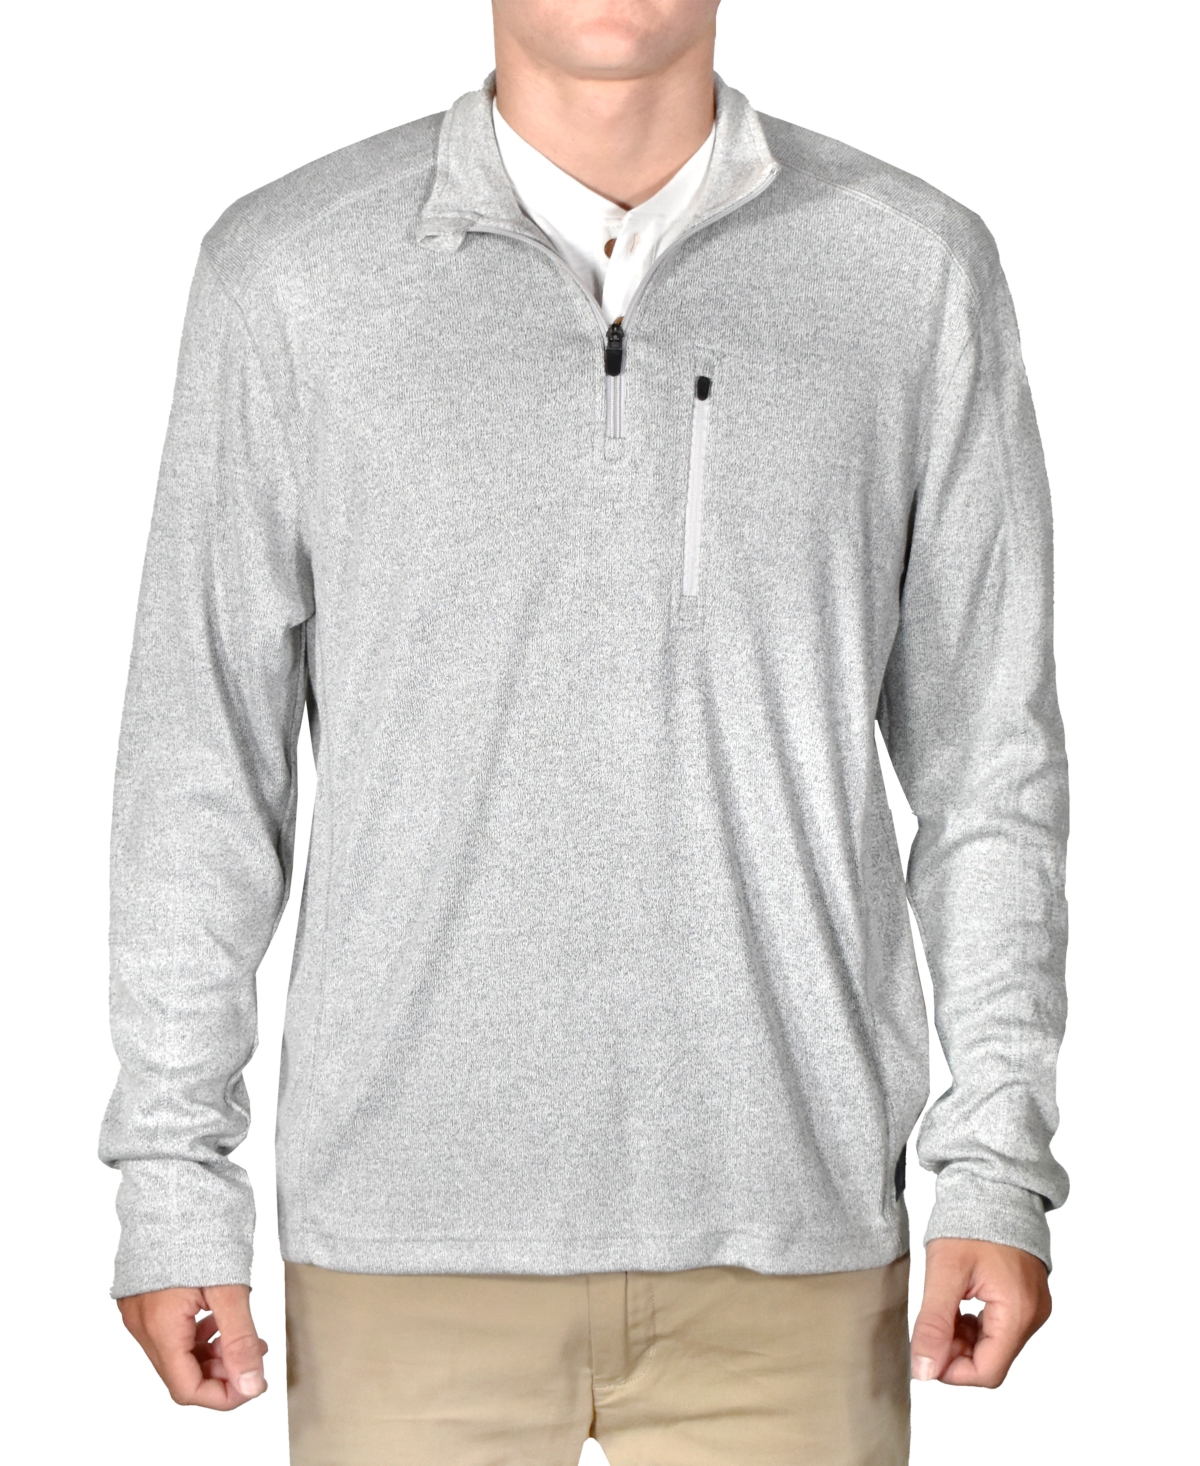 Men's Micro-Rib Quarter-Zip Ribbed Sweater - Lt Grey